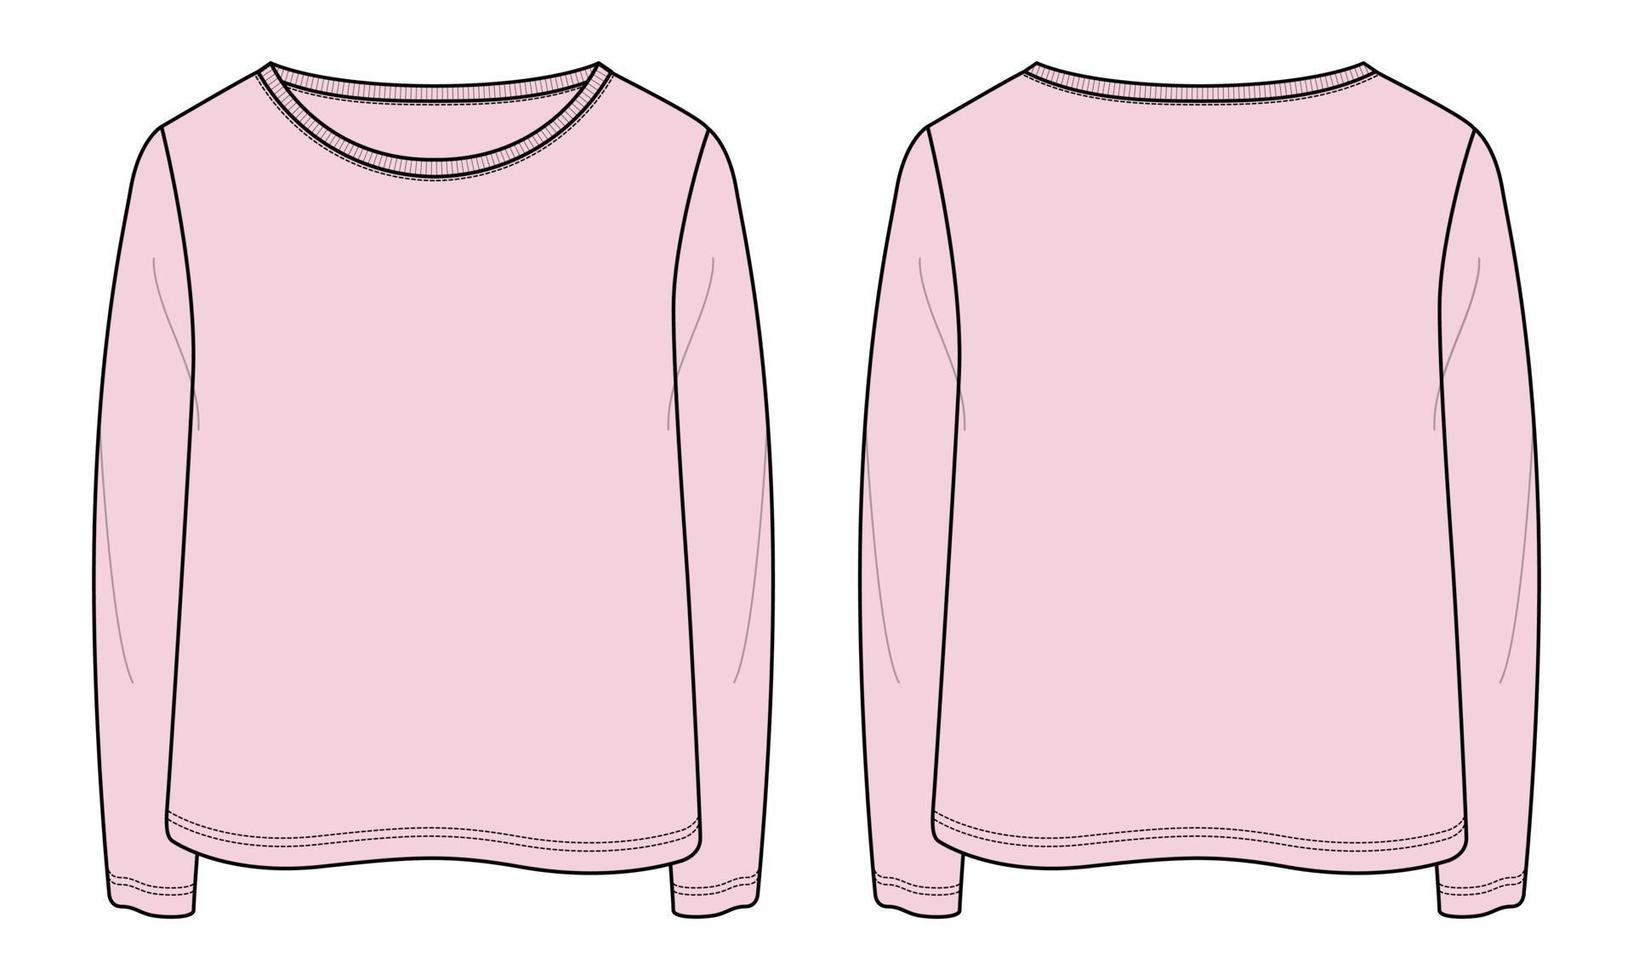 camiseta de manga longa tops de moda técnica ilustração vetorial de desenho plano modelo de cor roxa para senhoras e bebés vetor